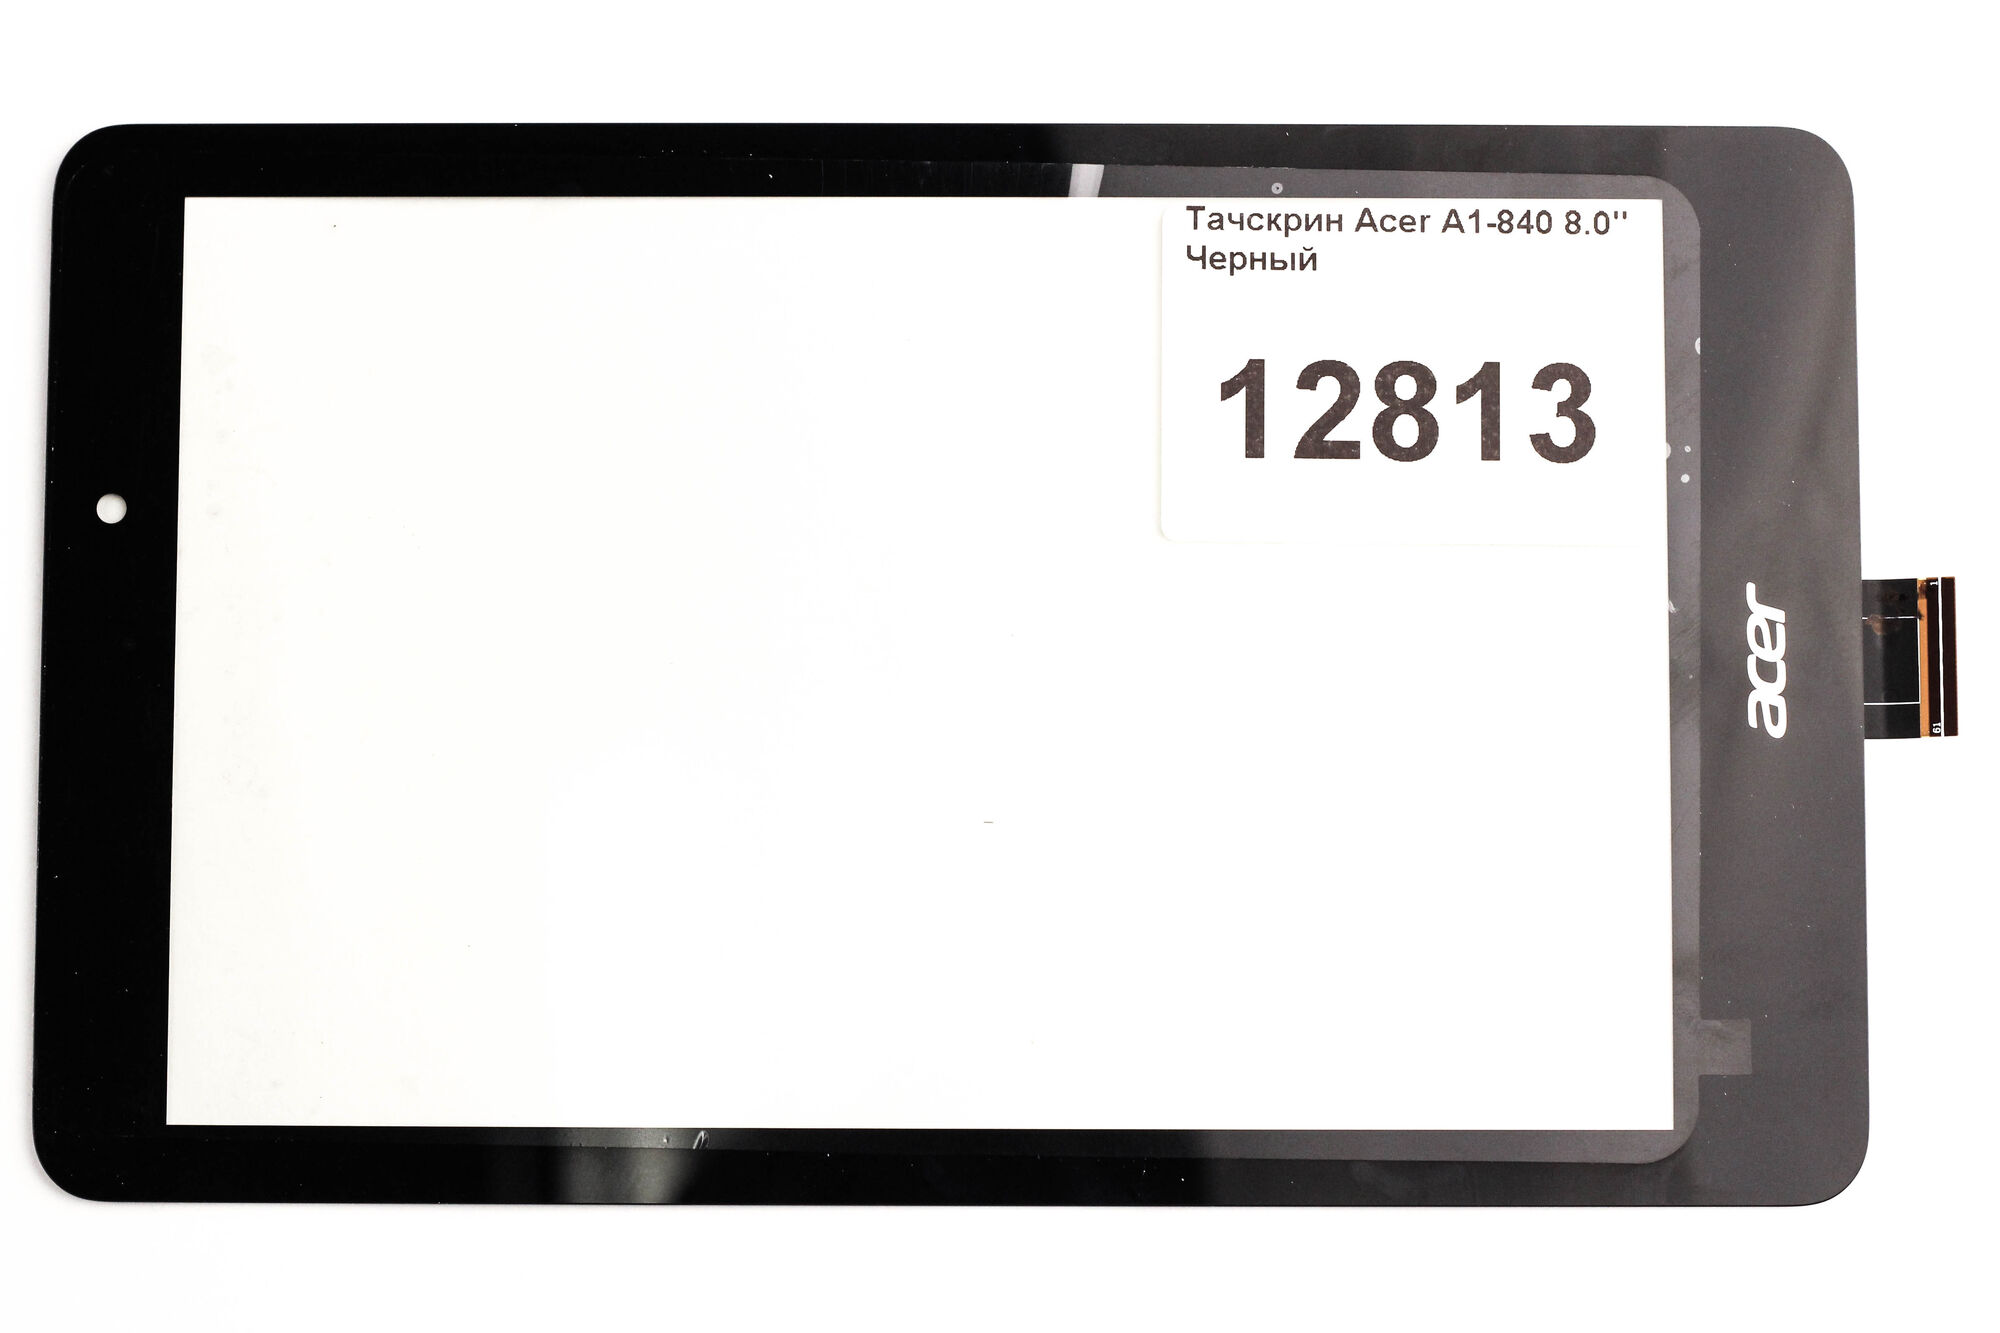 Тачскрин Acer A1-840 8.0" Черный